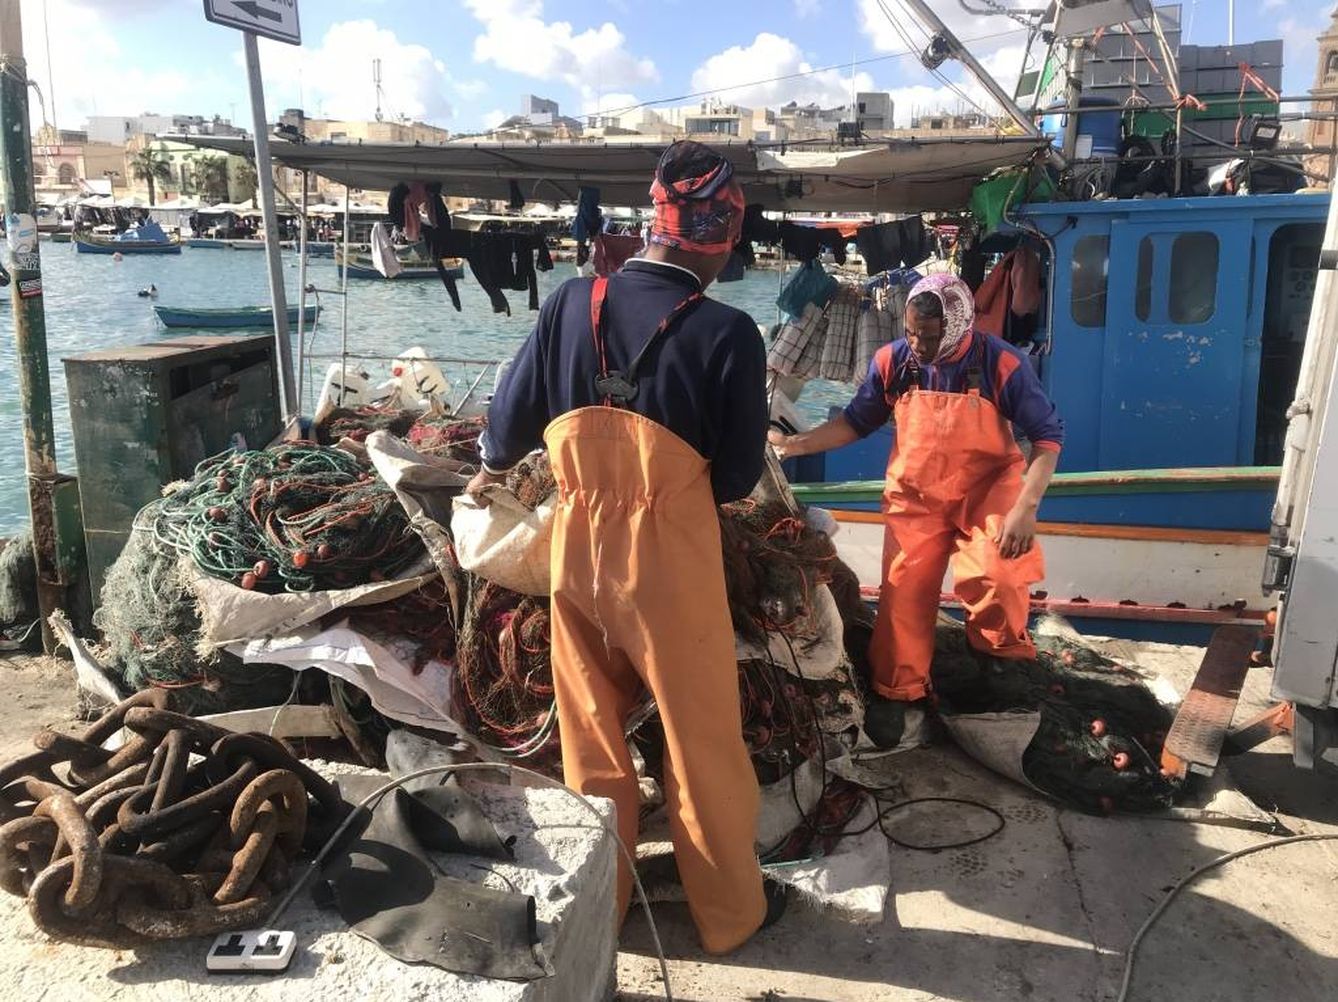 Pescadores inmigrantes en Malta. (Javier Brandoli)